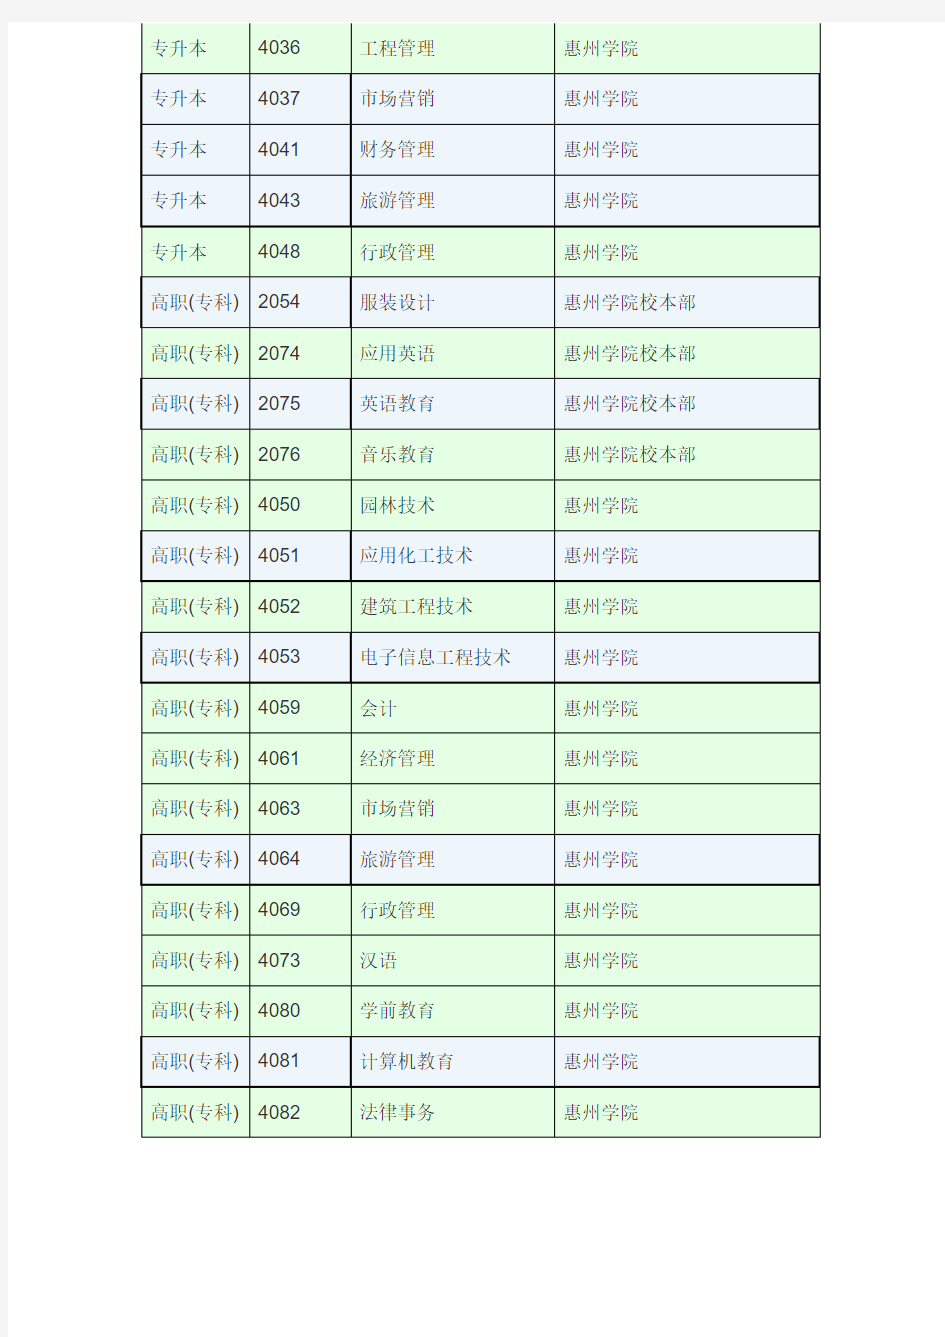 2013年惠州学院专业代码